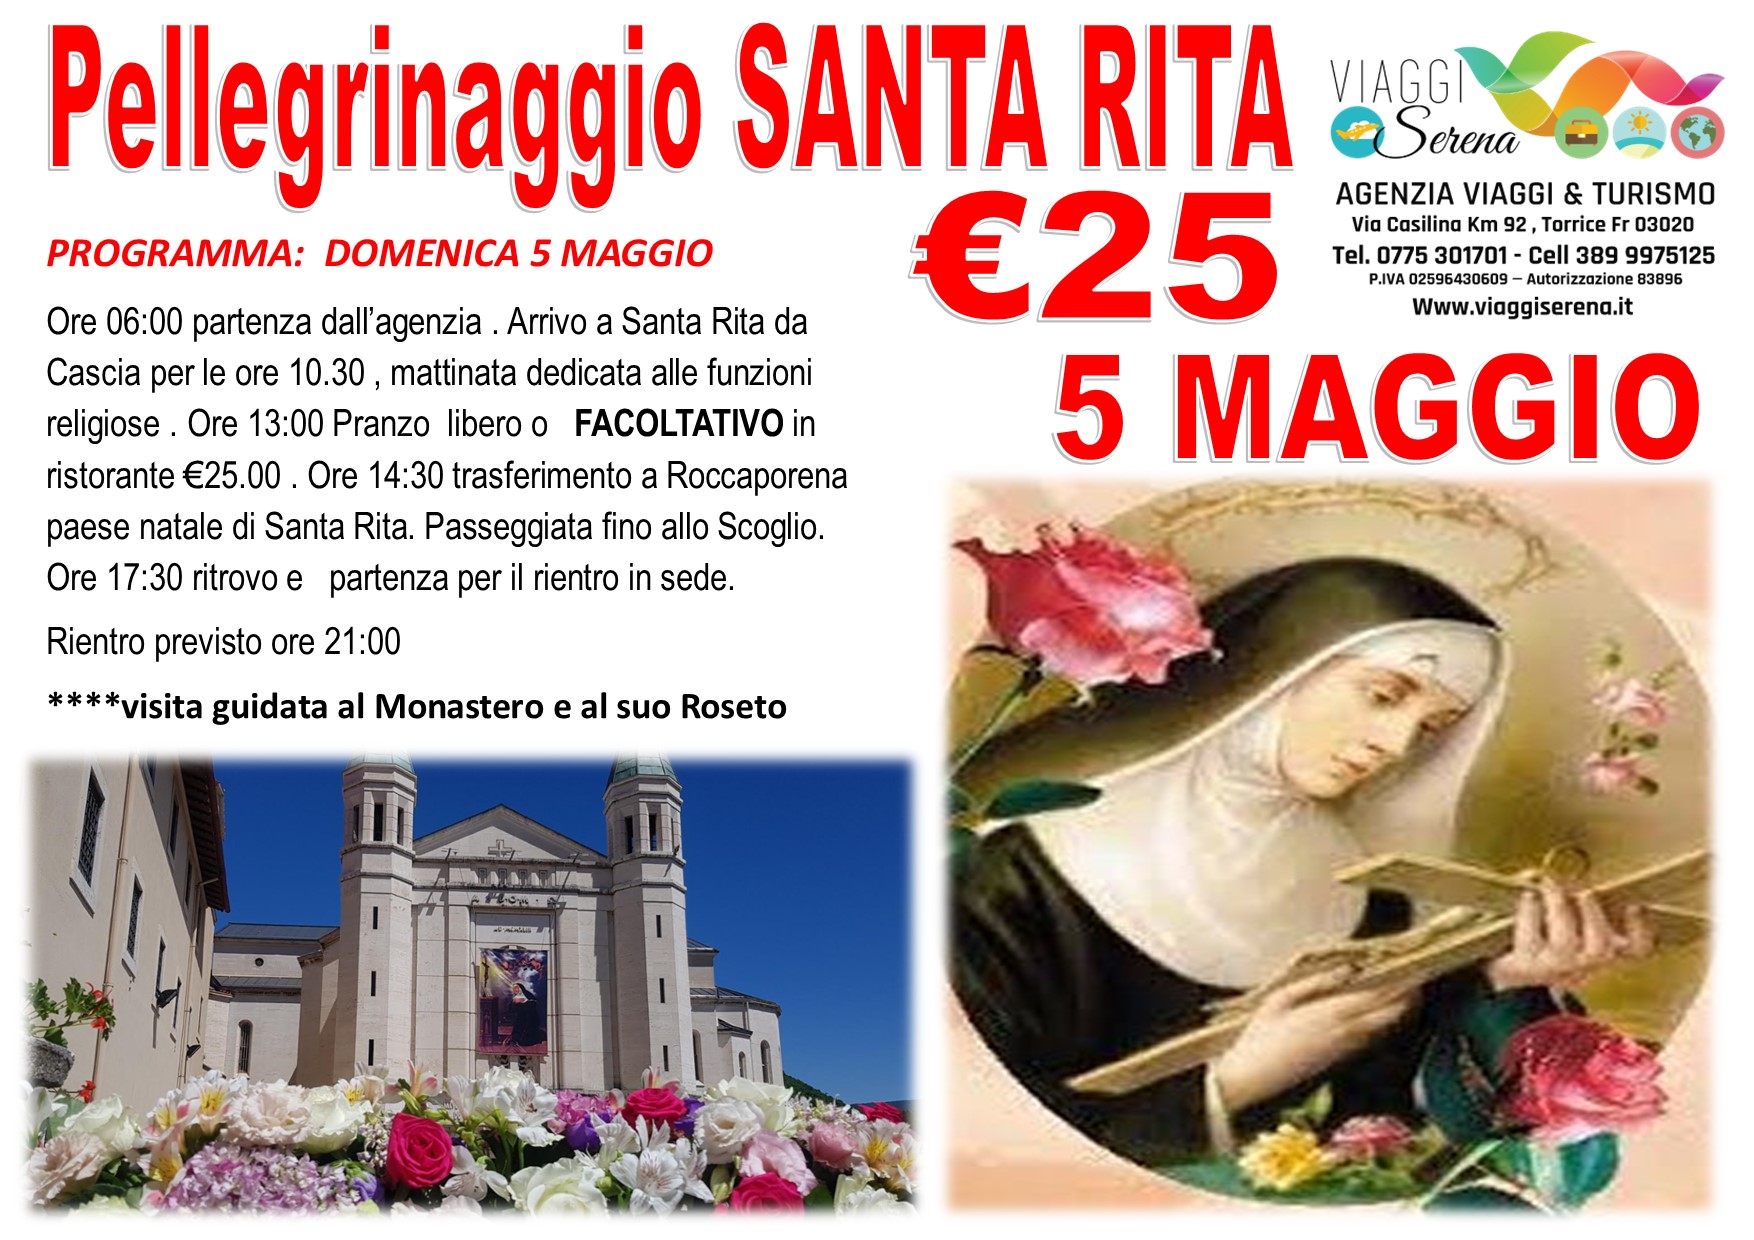 Viaggi di gruppo: Pellegrinaggio Santa Rita e Roccaporena 5 Maggio € 25,00